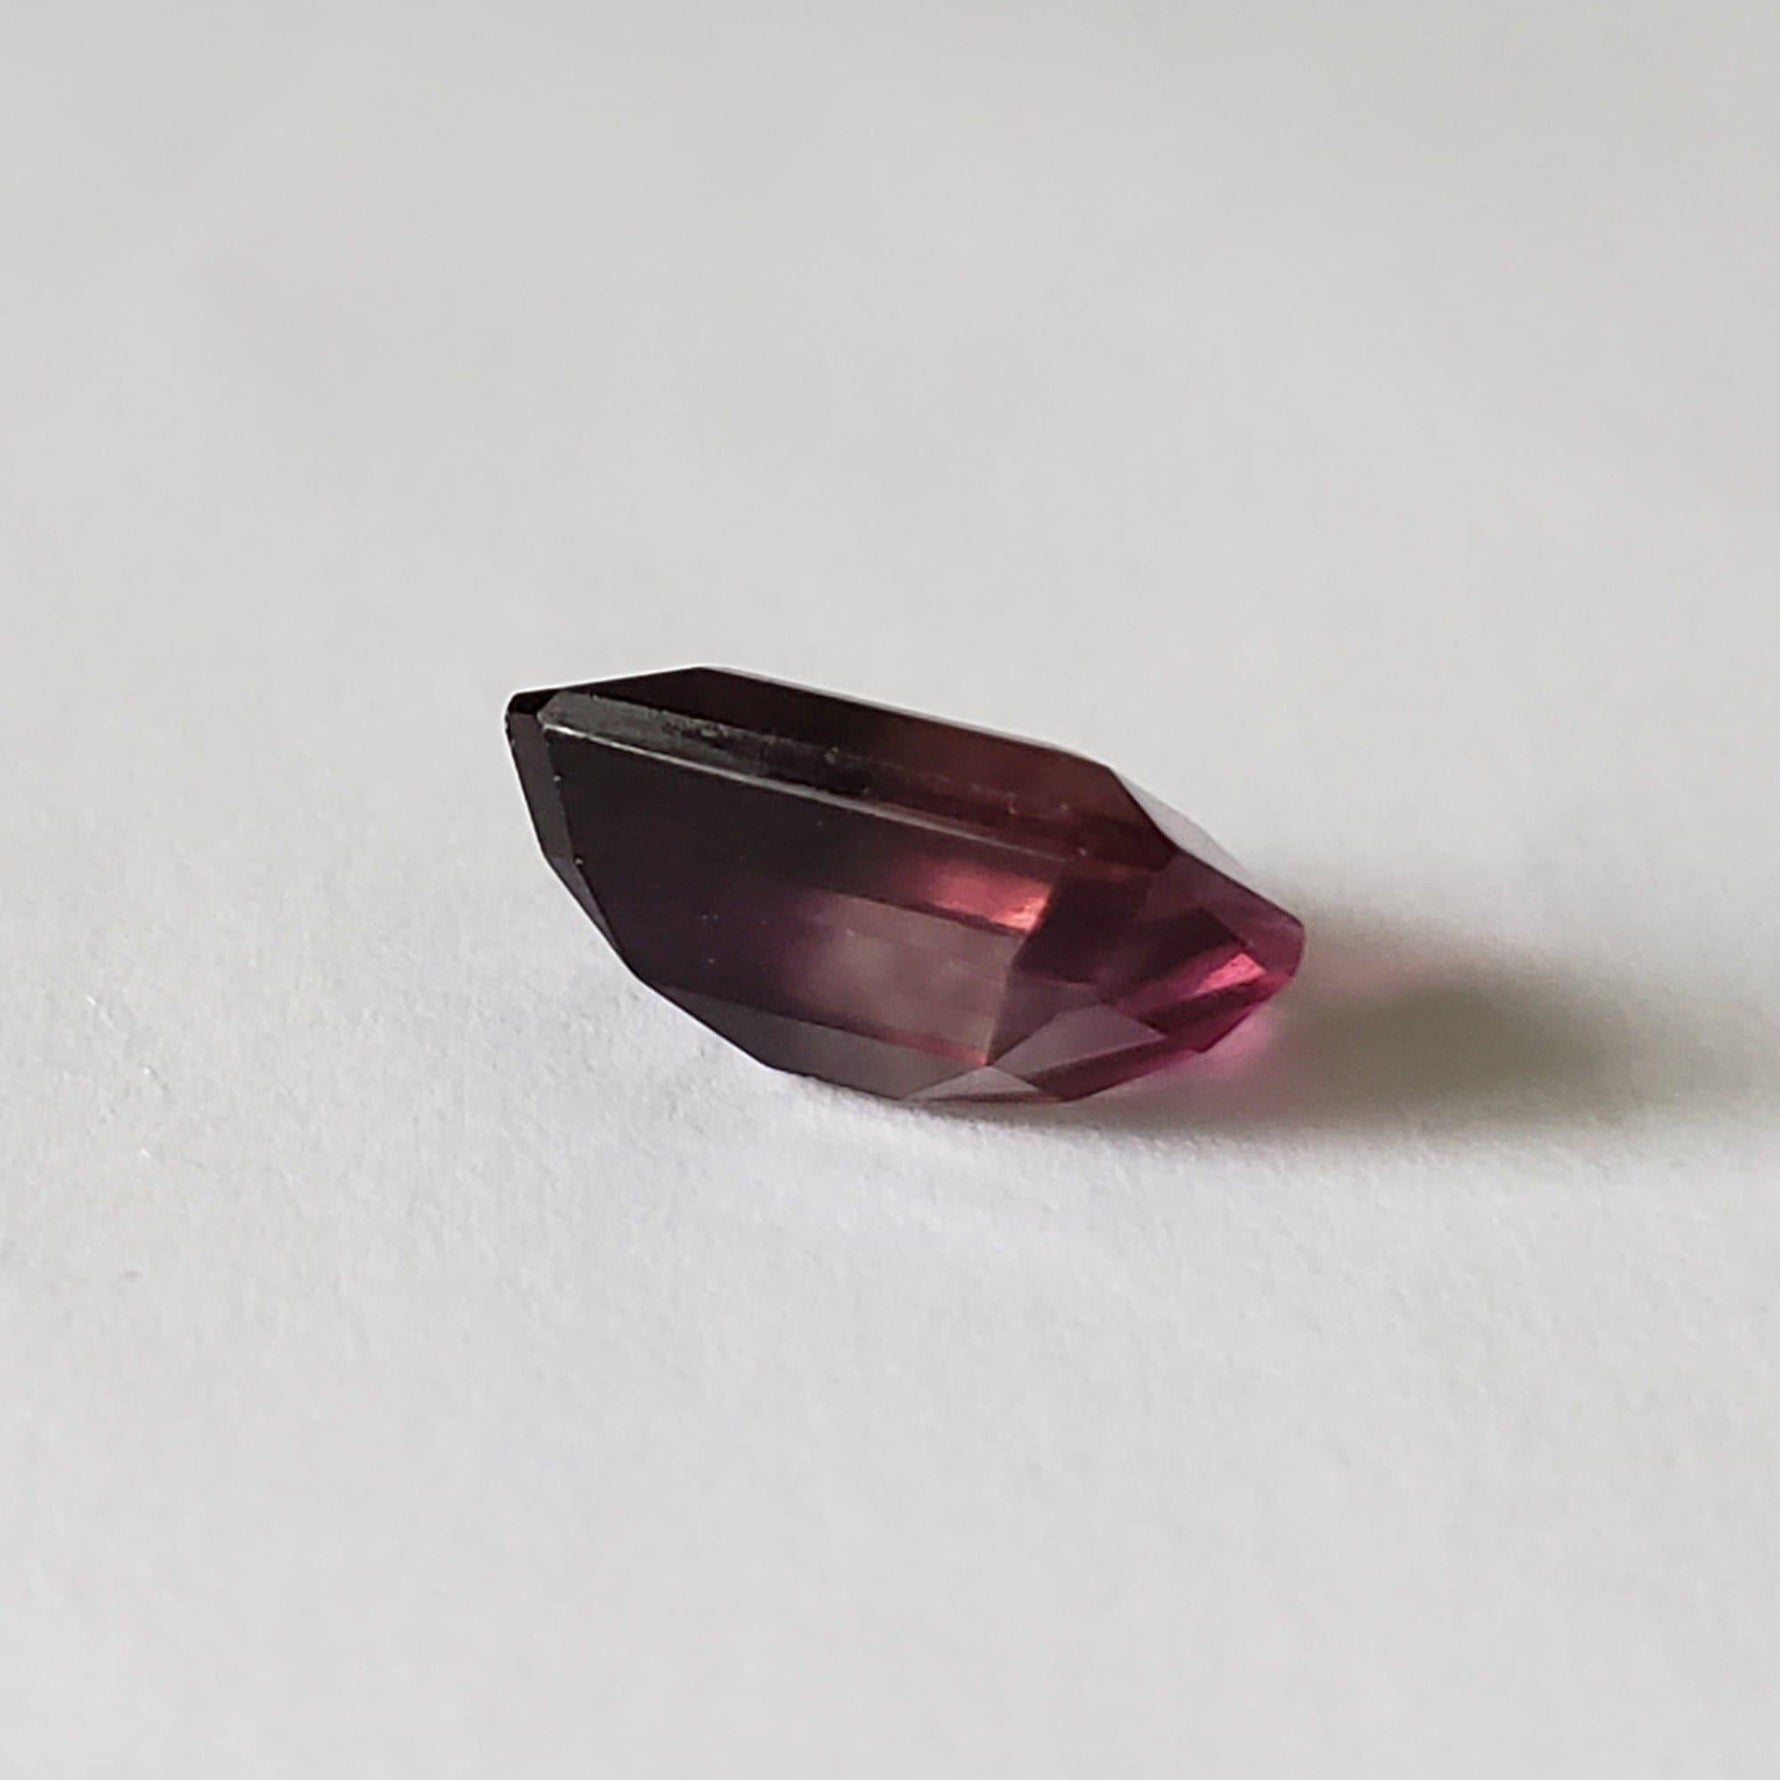 Fluorite | Octagon Cut | Bi-Color Purple 11.9x10mm 7.1ct